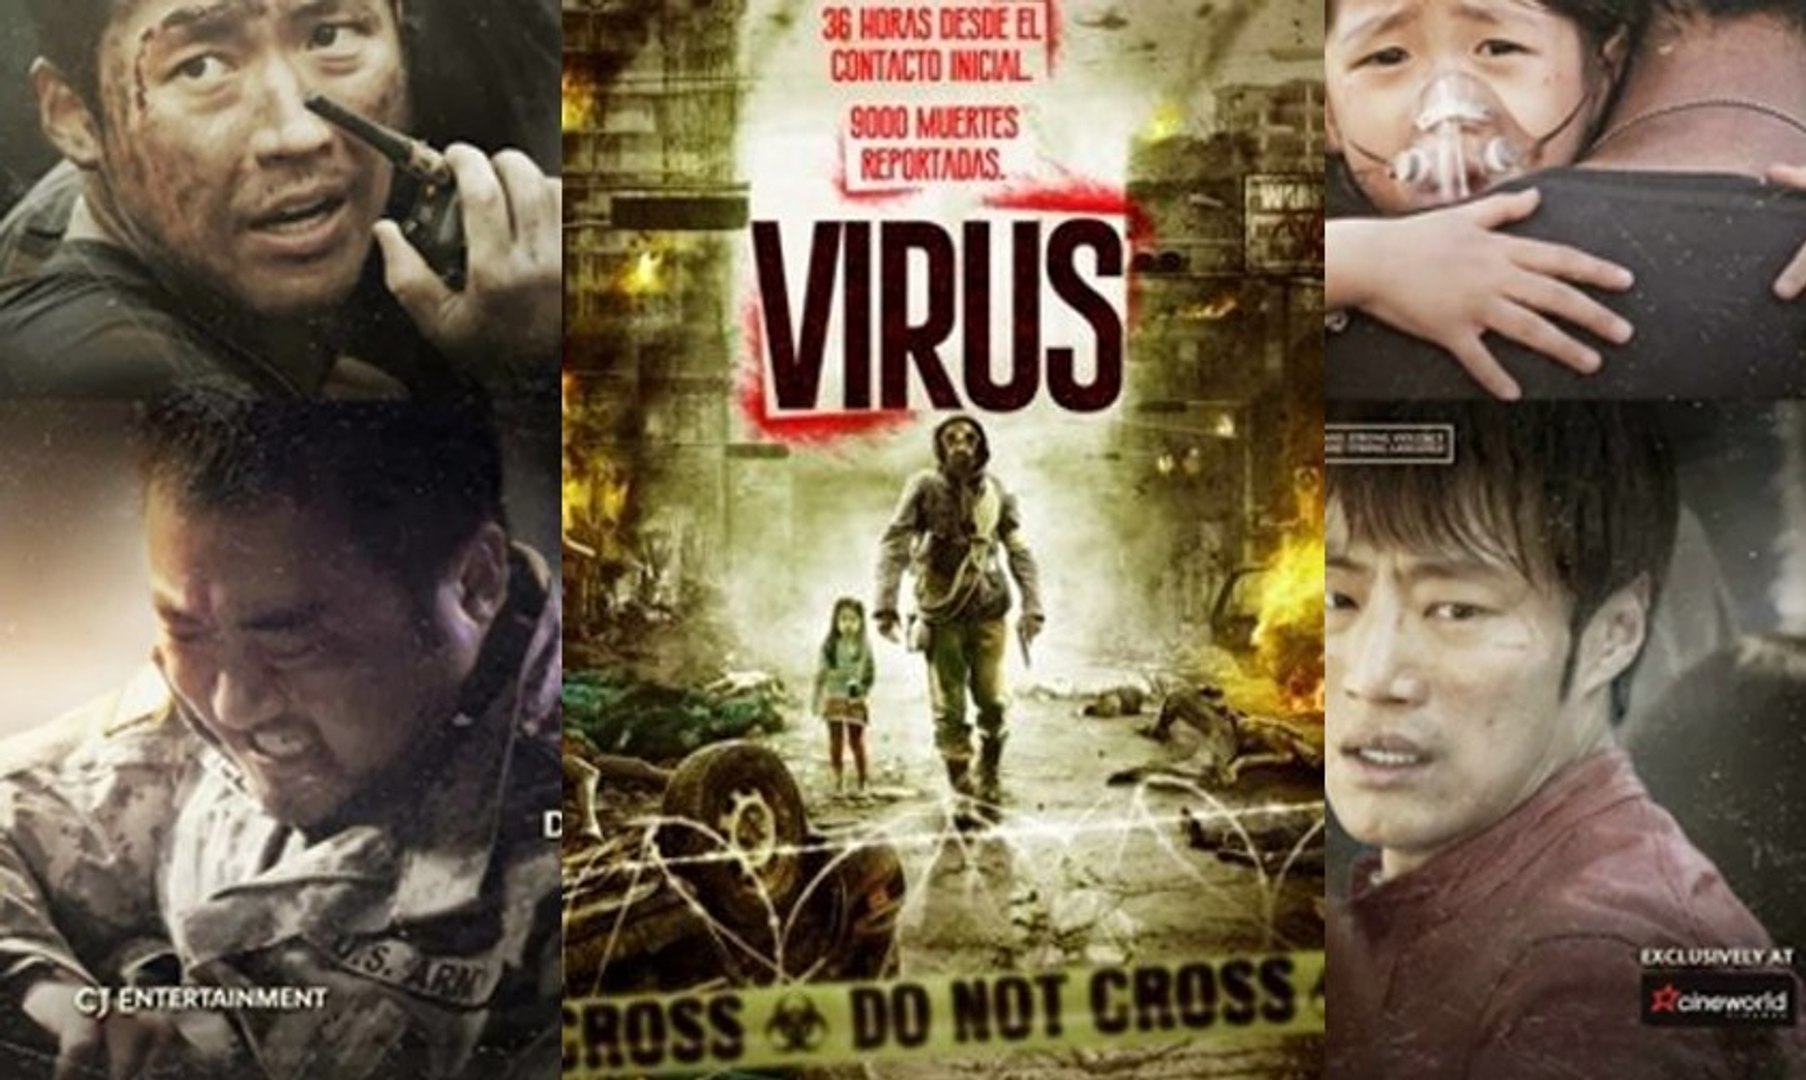                                  Virus (2013) Español Latino